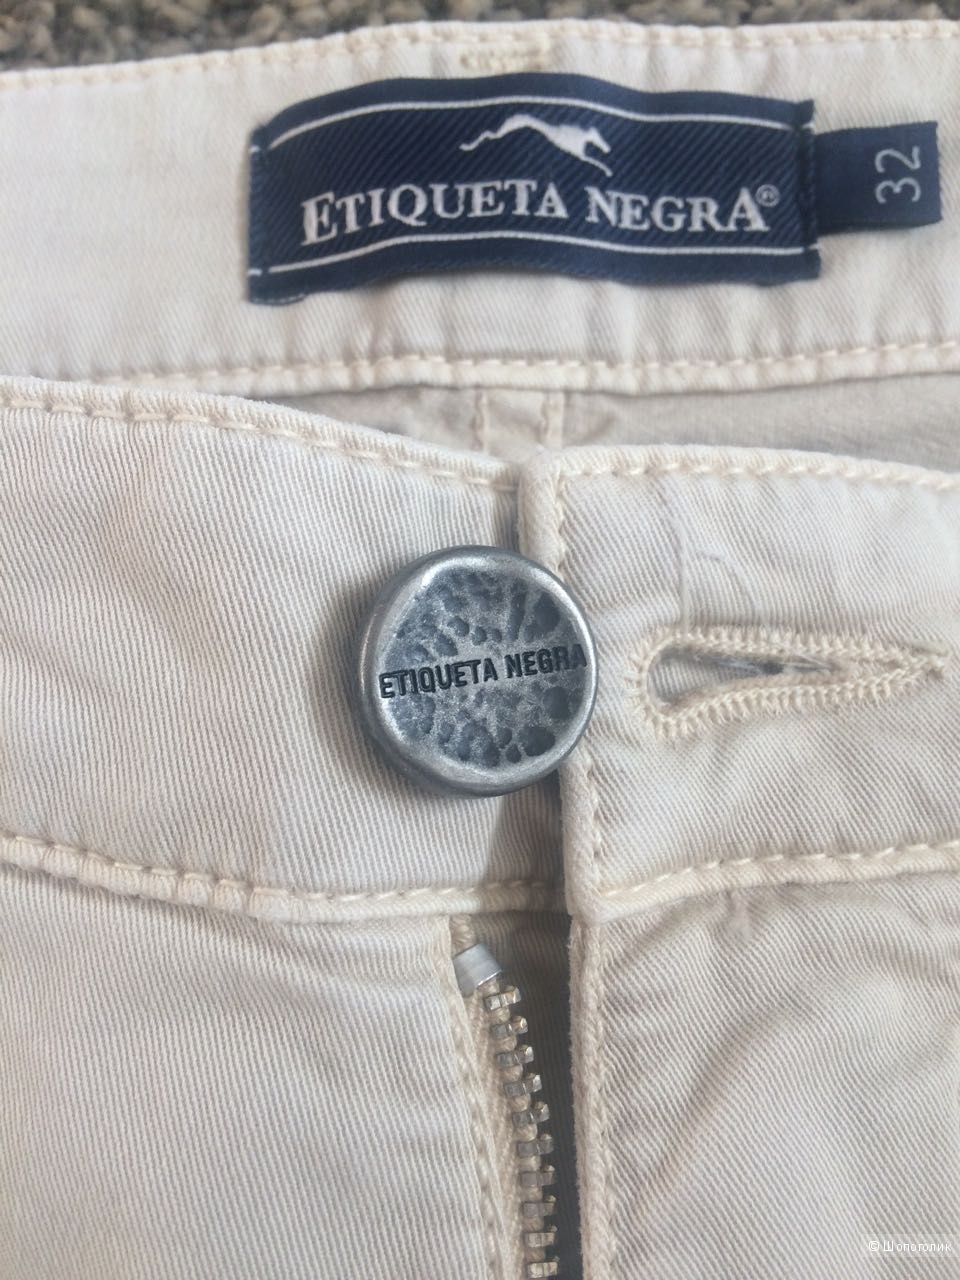 Мужские брюки джинсы Etiqueta Negra, р. 32